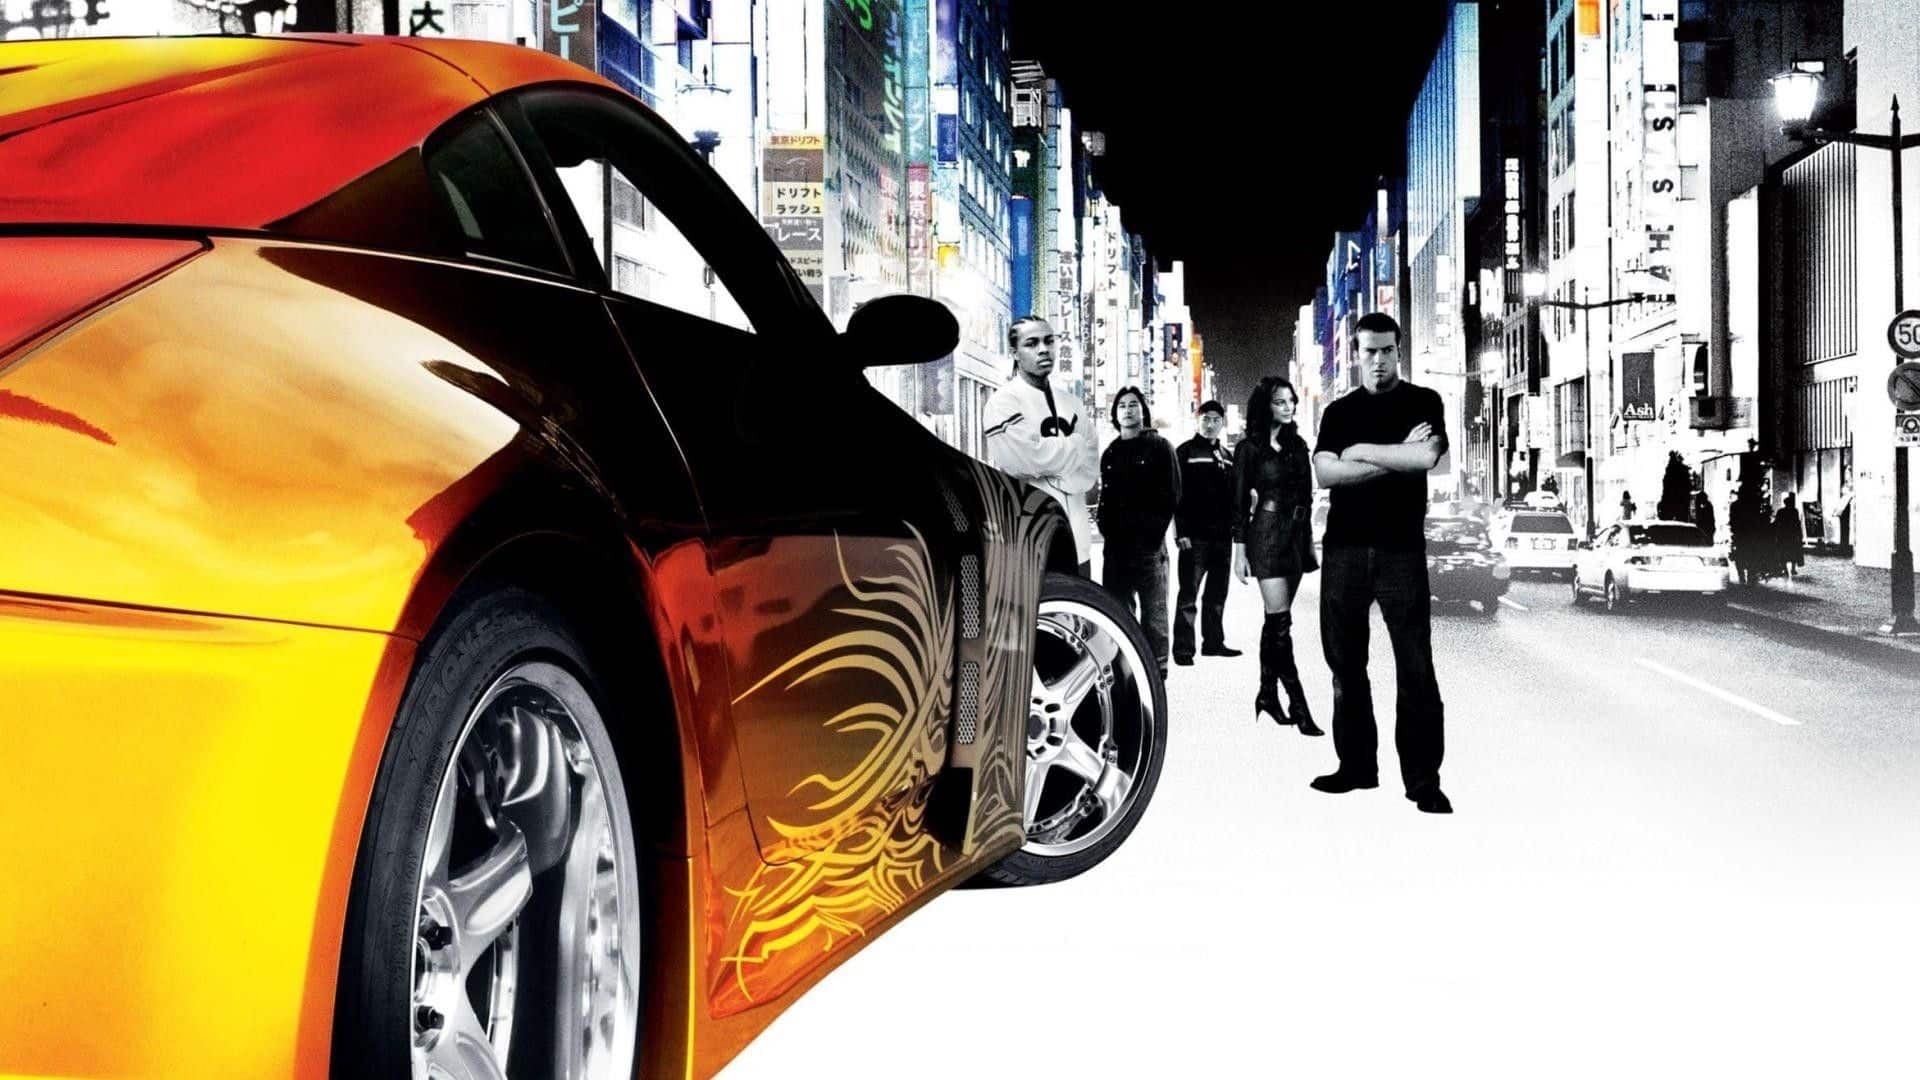 The Fast and the Furious: Tokyo Drift – i brani della colonna sonora